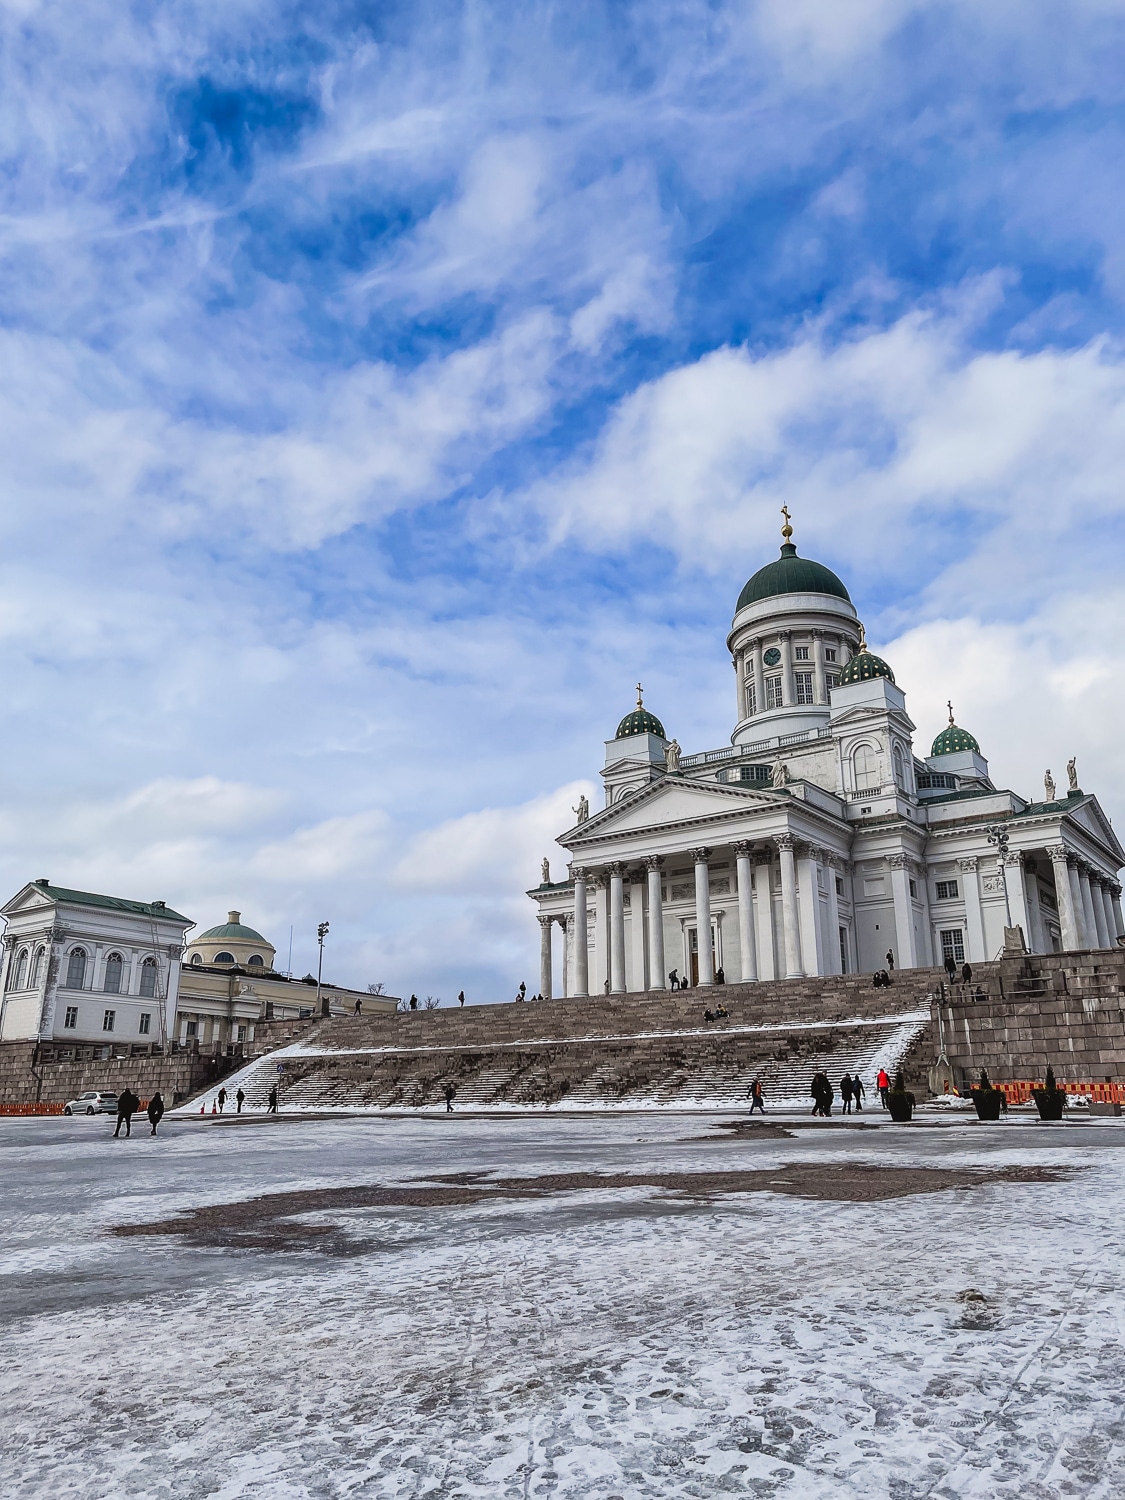 Dom von Helsinki am Senatsplatz (Senaatintori) - Sehenswürdigkeiten in Helsinki